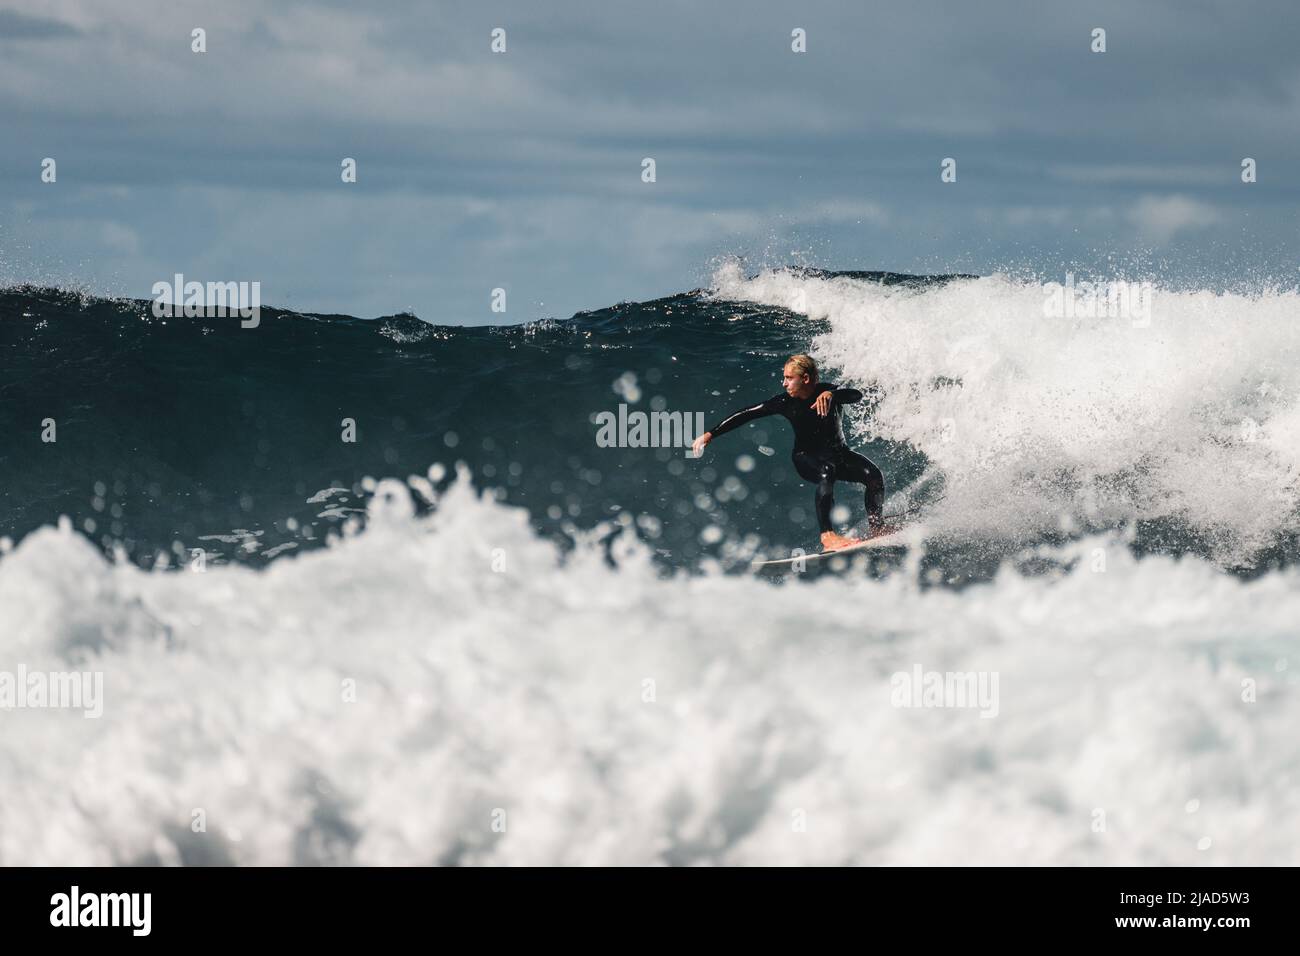 Hombre practicando surf en el océano Atlántico, Tenerife, Islas Canarias, España Foto de stock